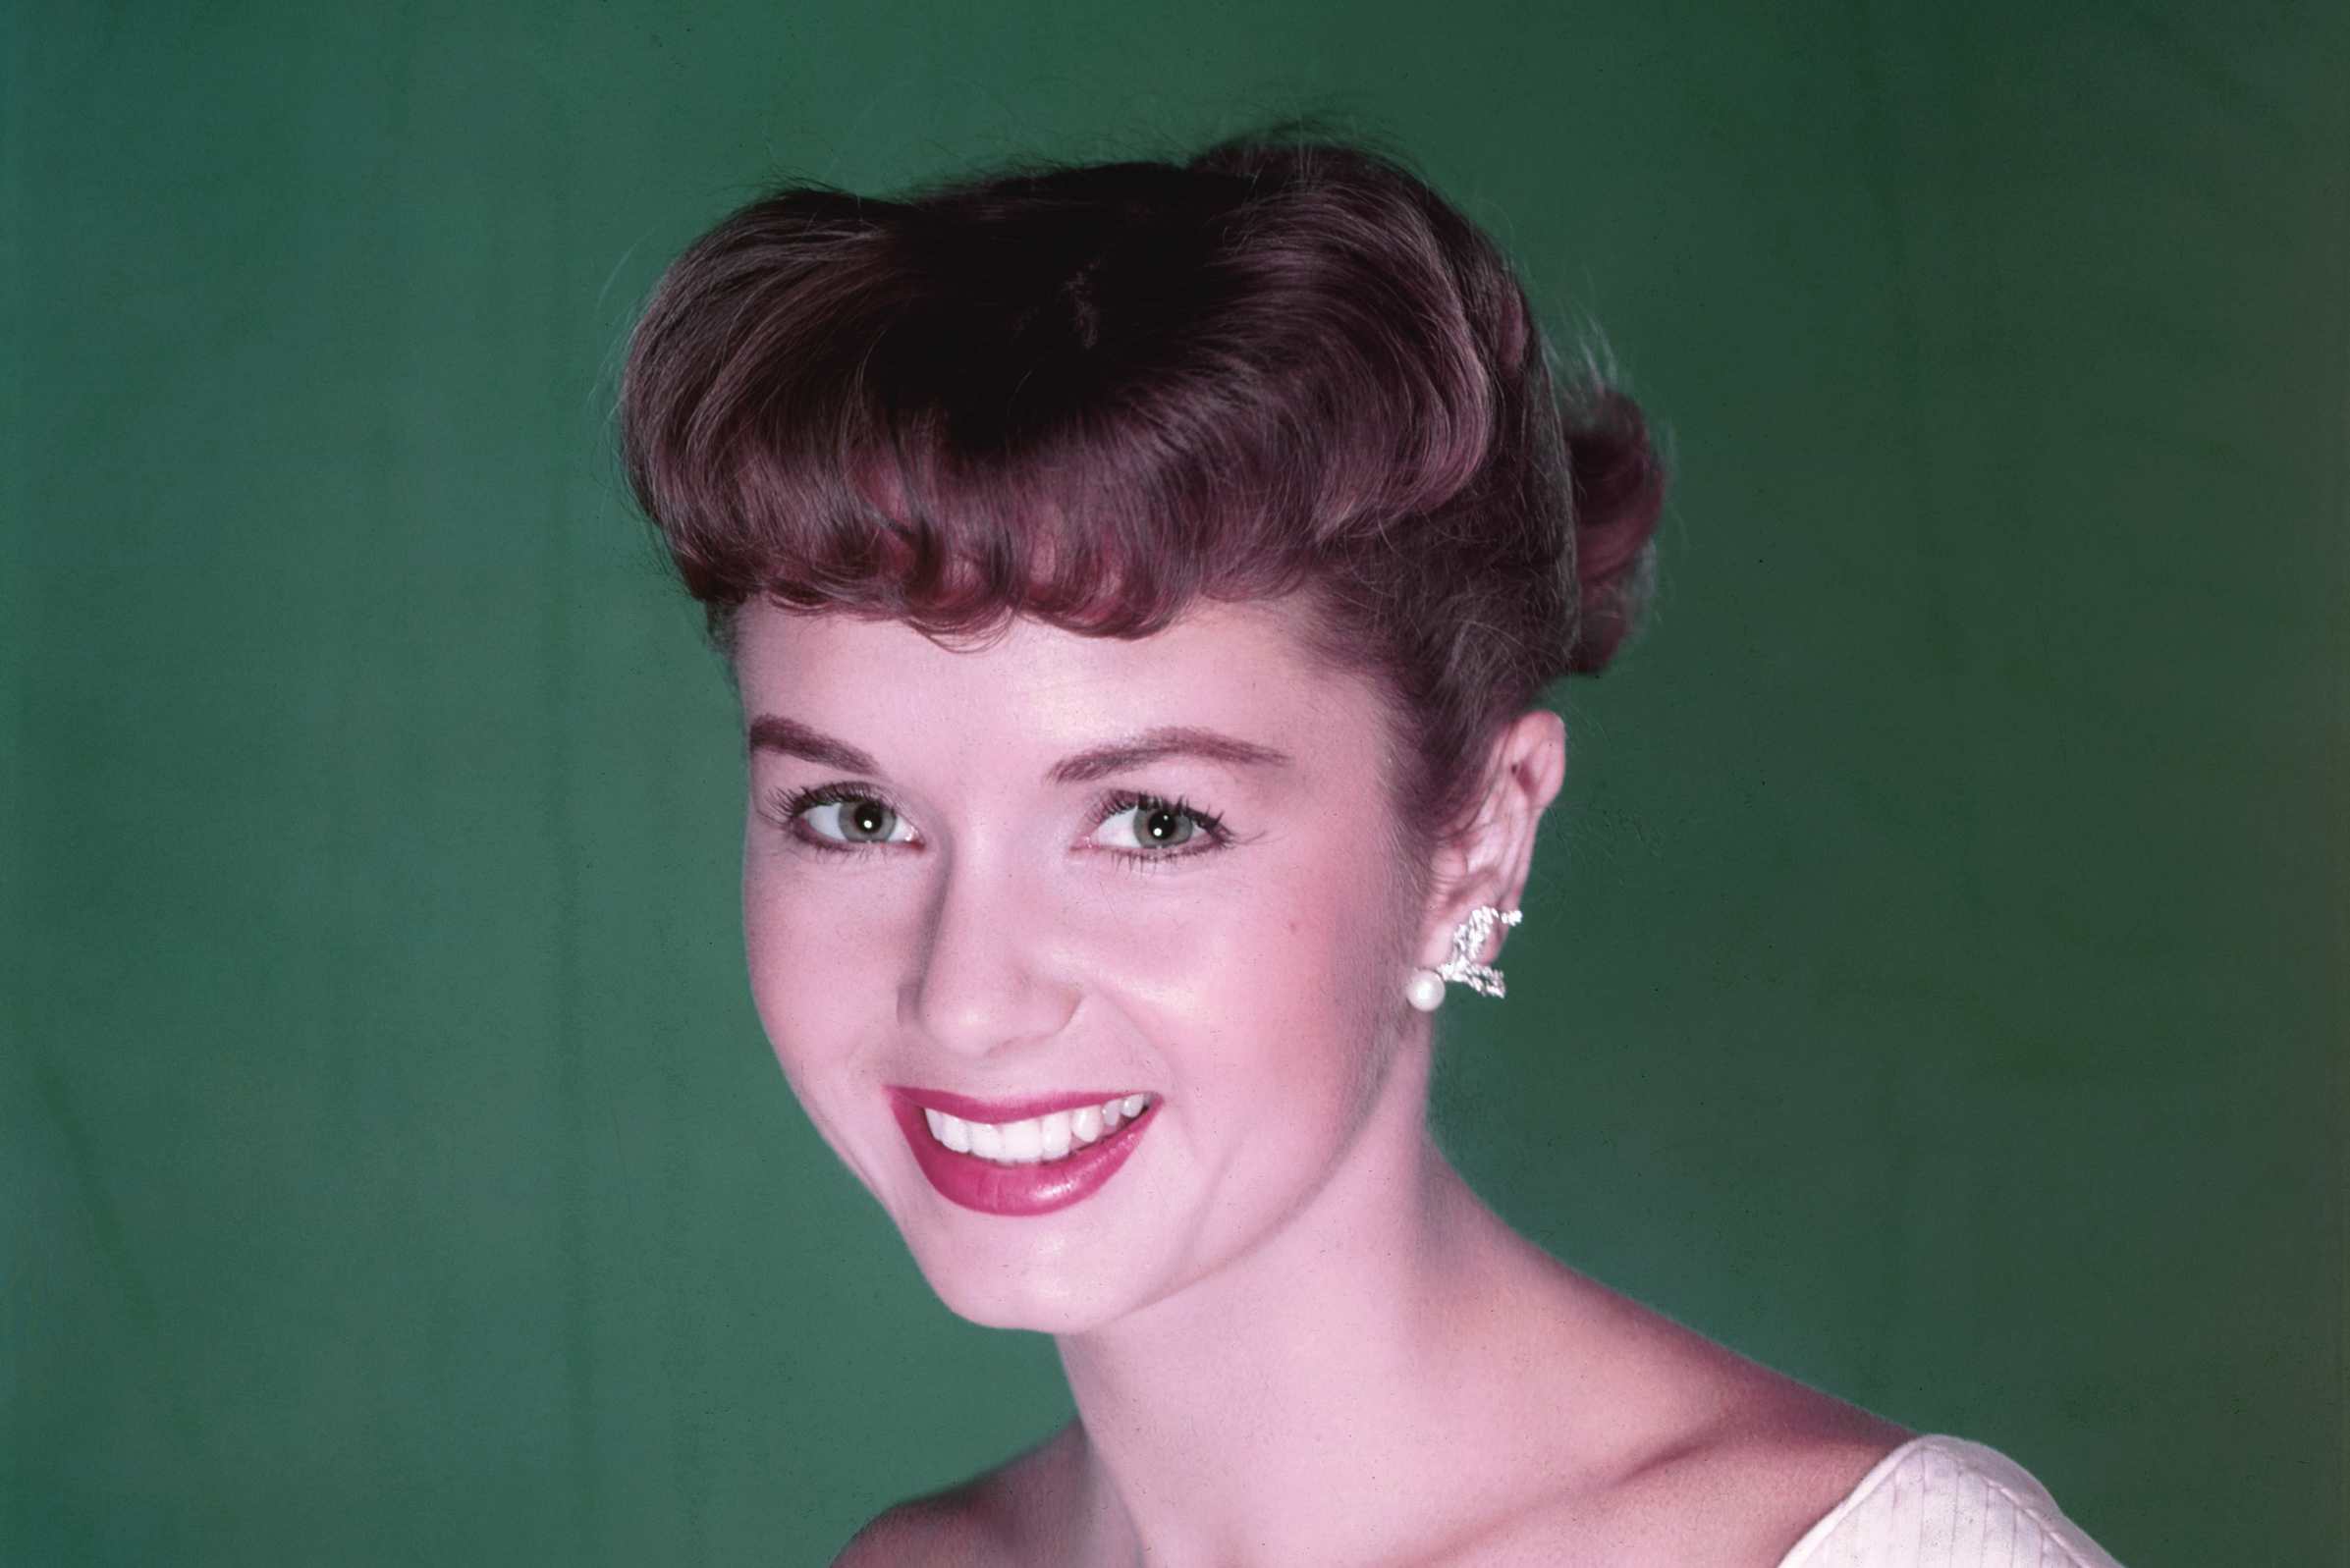 Debbie Reynolds - portraitiert im Jahr 1955